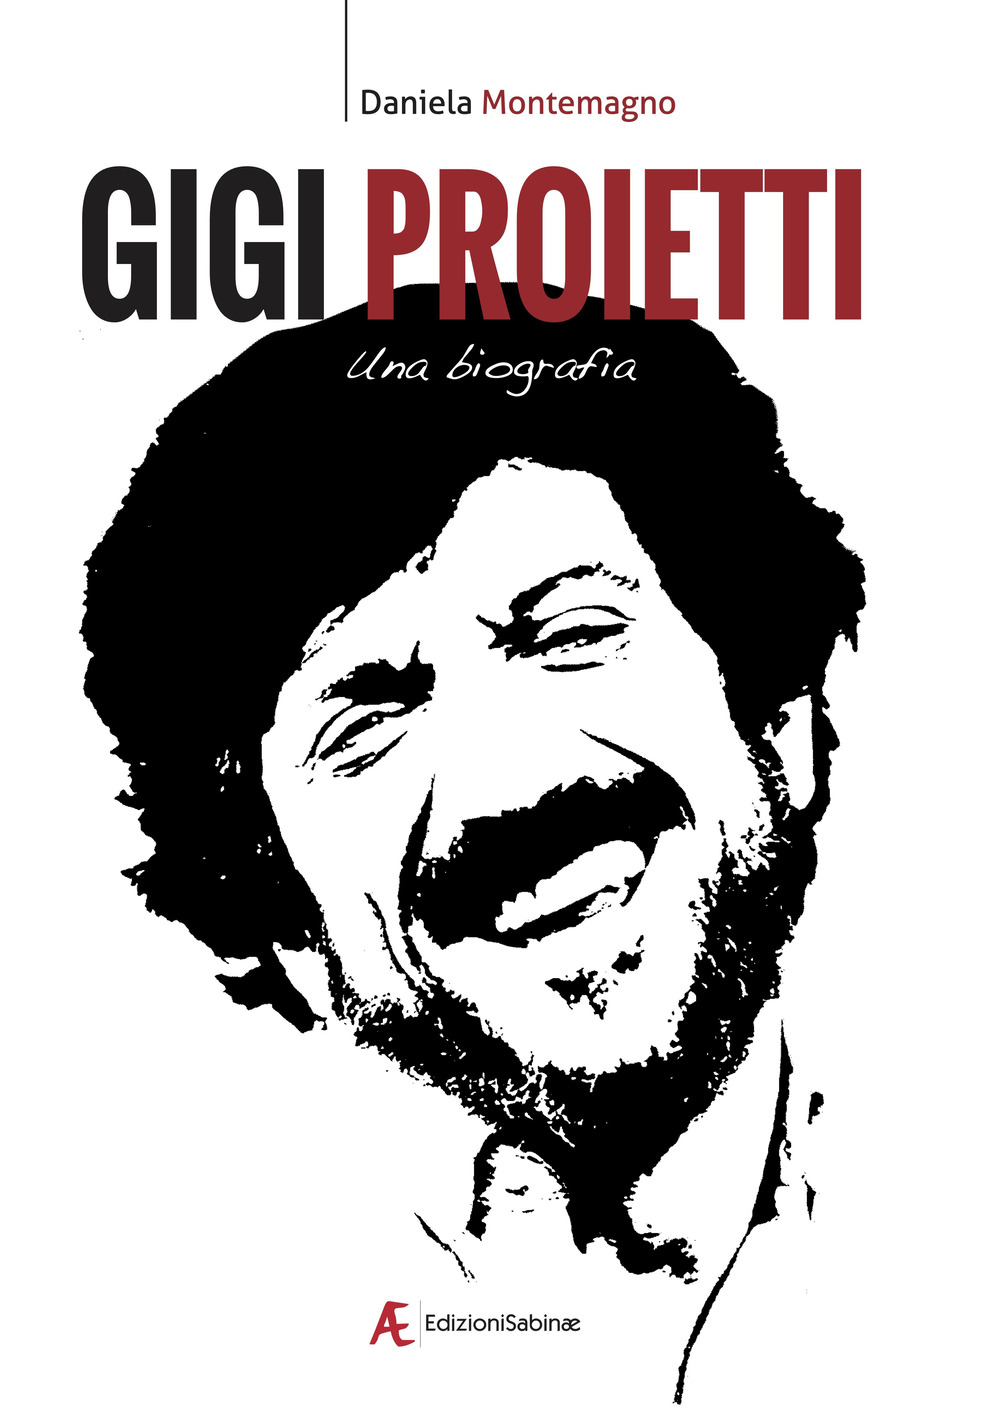 Libri Montemagno Daniela - Gigi Proietti. Una Biografia NUOVO SIGILLATO, EDIZIONE DEL 20/06/2022 SUBITO DISPONIBILE